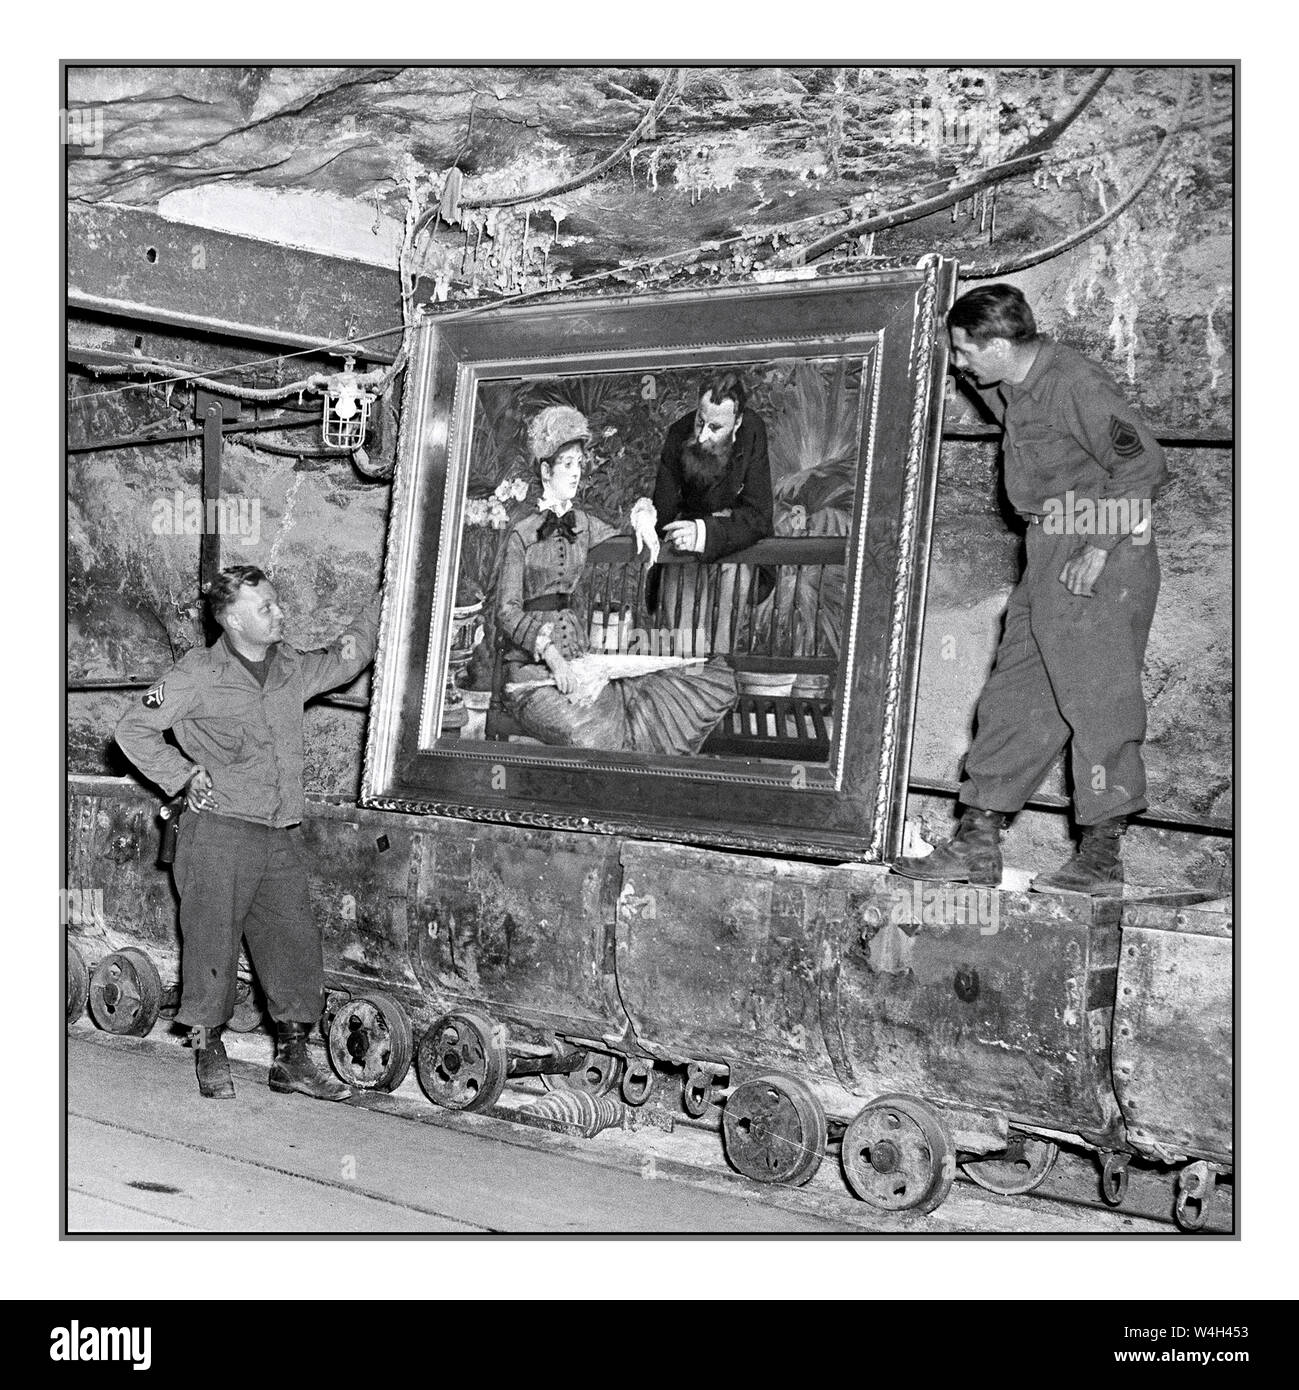 Butin nazi d'après la seconde Guerre mondiale trouvé à Merkers, en Allemagne les soldats américains examinent un tableau célèbre, 'dans le jardin d'hiver' de MANET, Edouard' de l'impressionniste français Edouard Manet, dans la collection de richesse du Reichbank, butin SS, et des peintures enlevées par les nazis de Berlin à une voûte de mine de sel. La 90e division de la troisième armée américaine a découvert l'or et d'autres trésors. 04/15/45 photographe : Cpl. Ornitz Banque D'Images